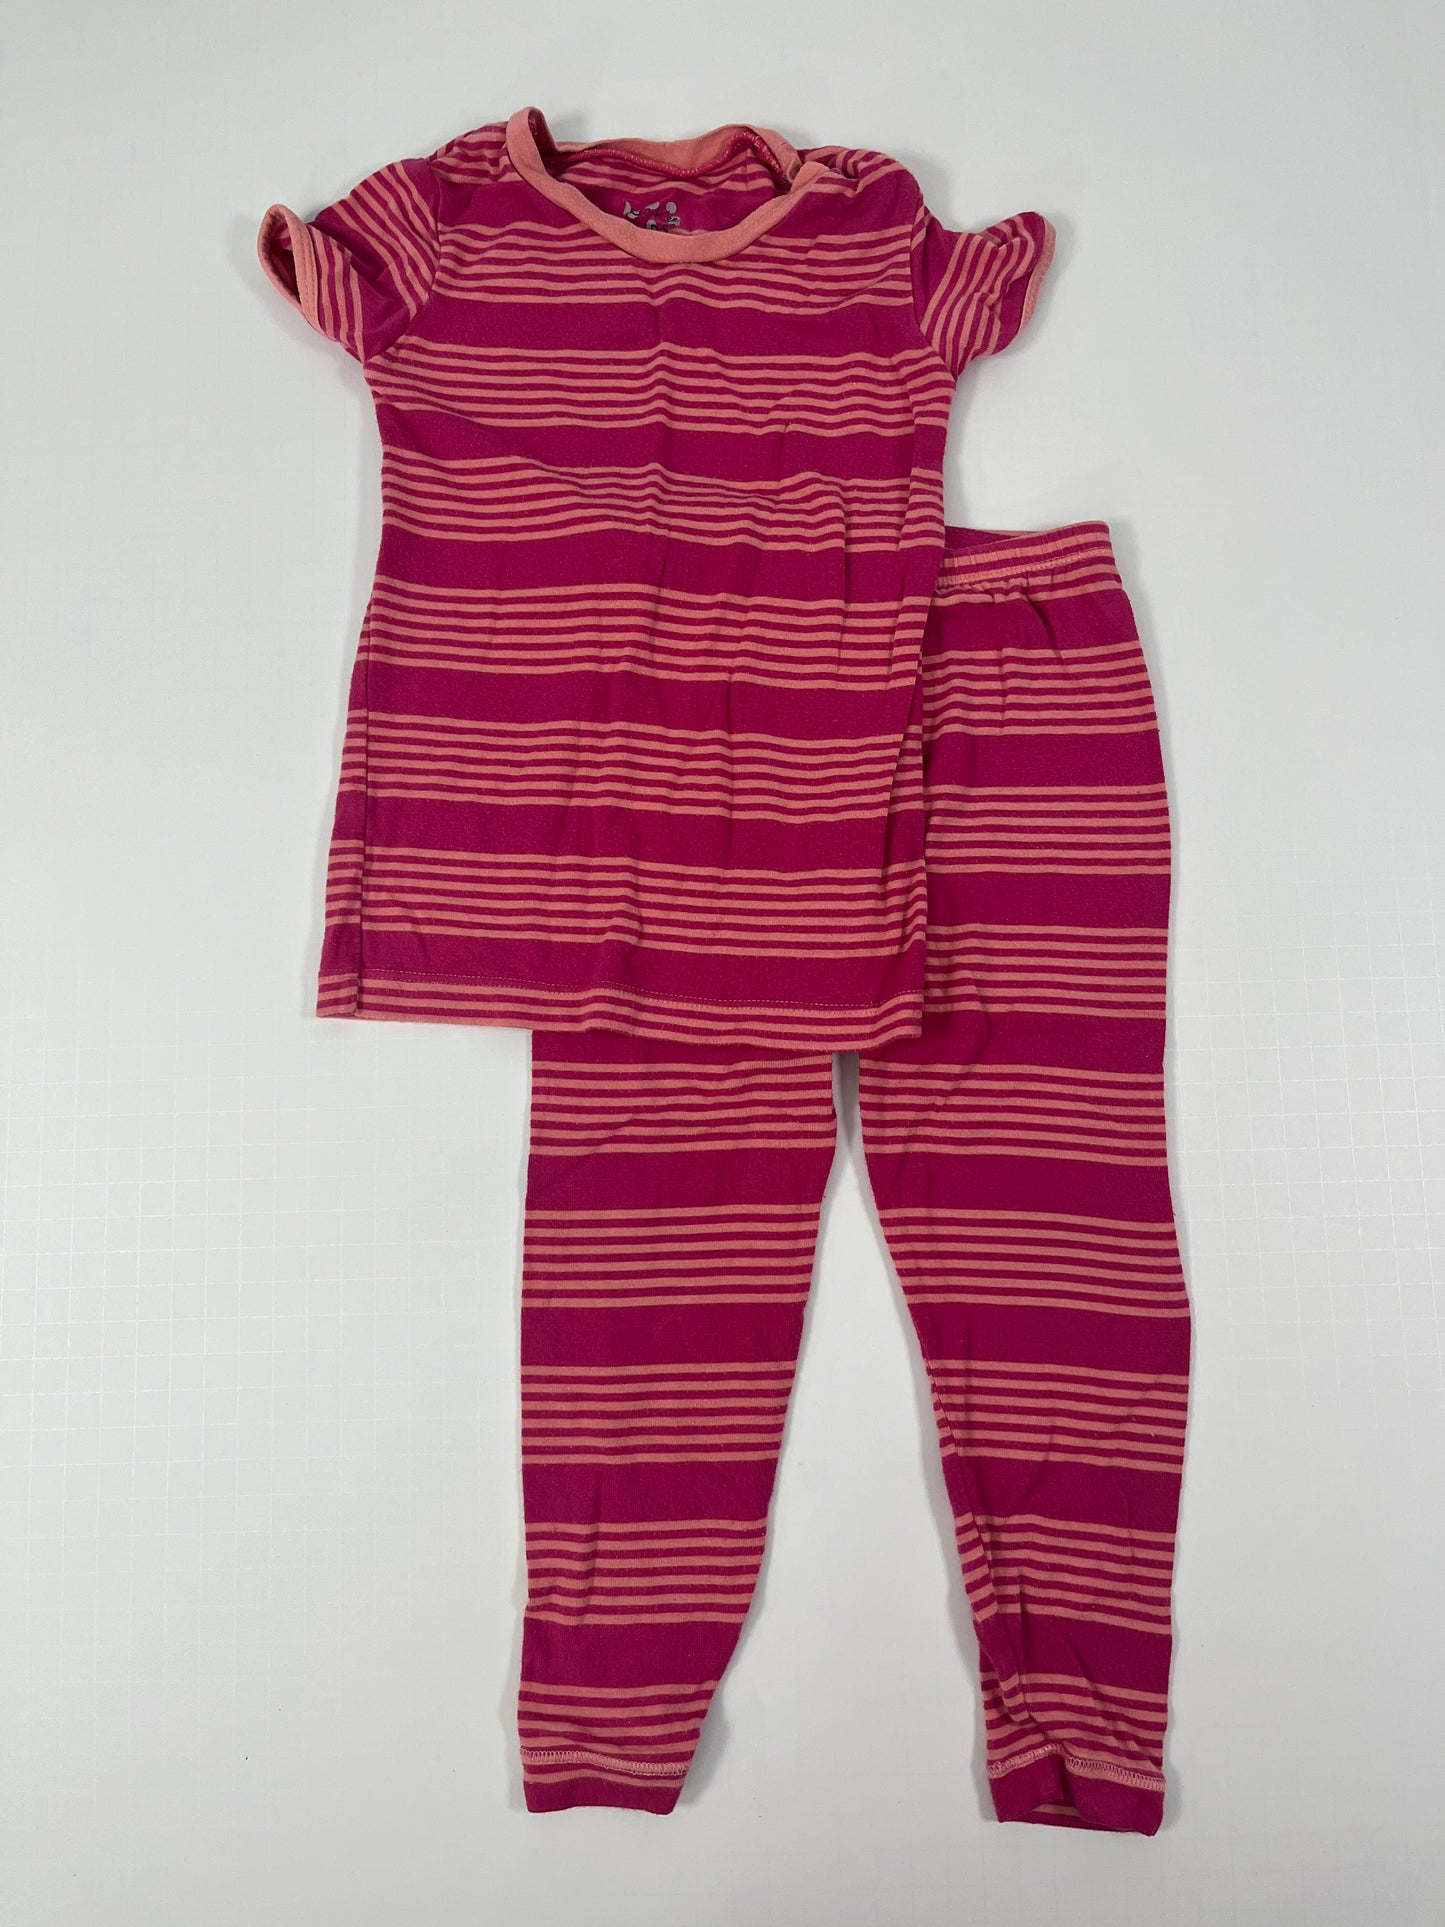 PPU 45242 Kickee Pants 3T pink striped bamboo pajamas